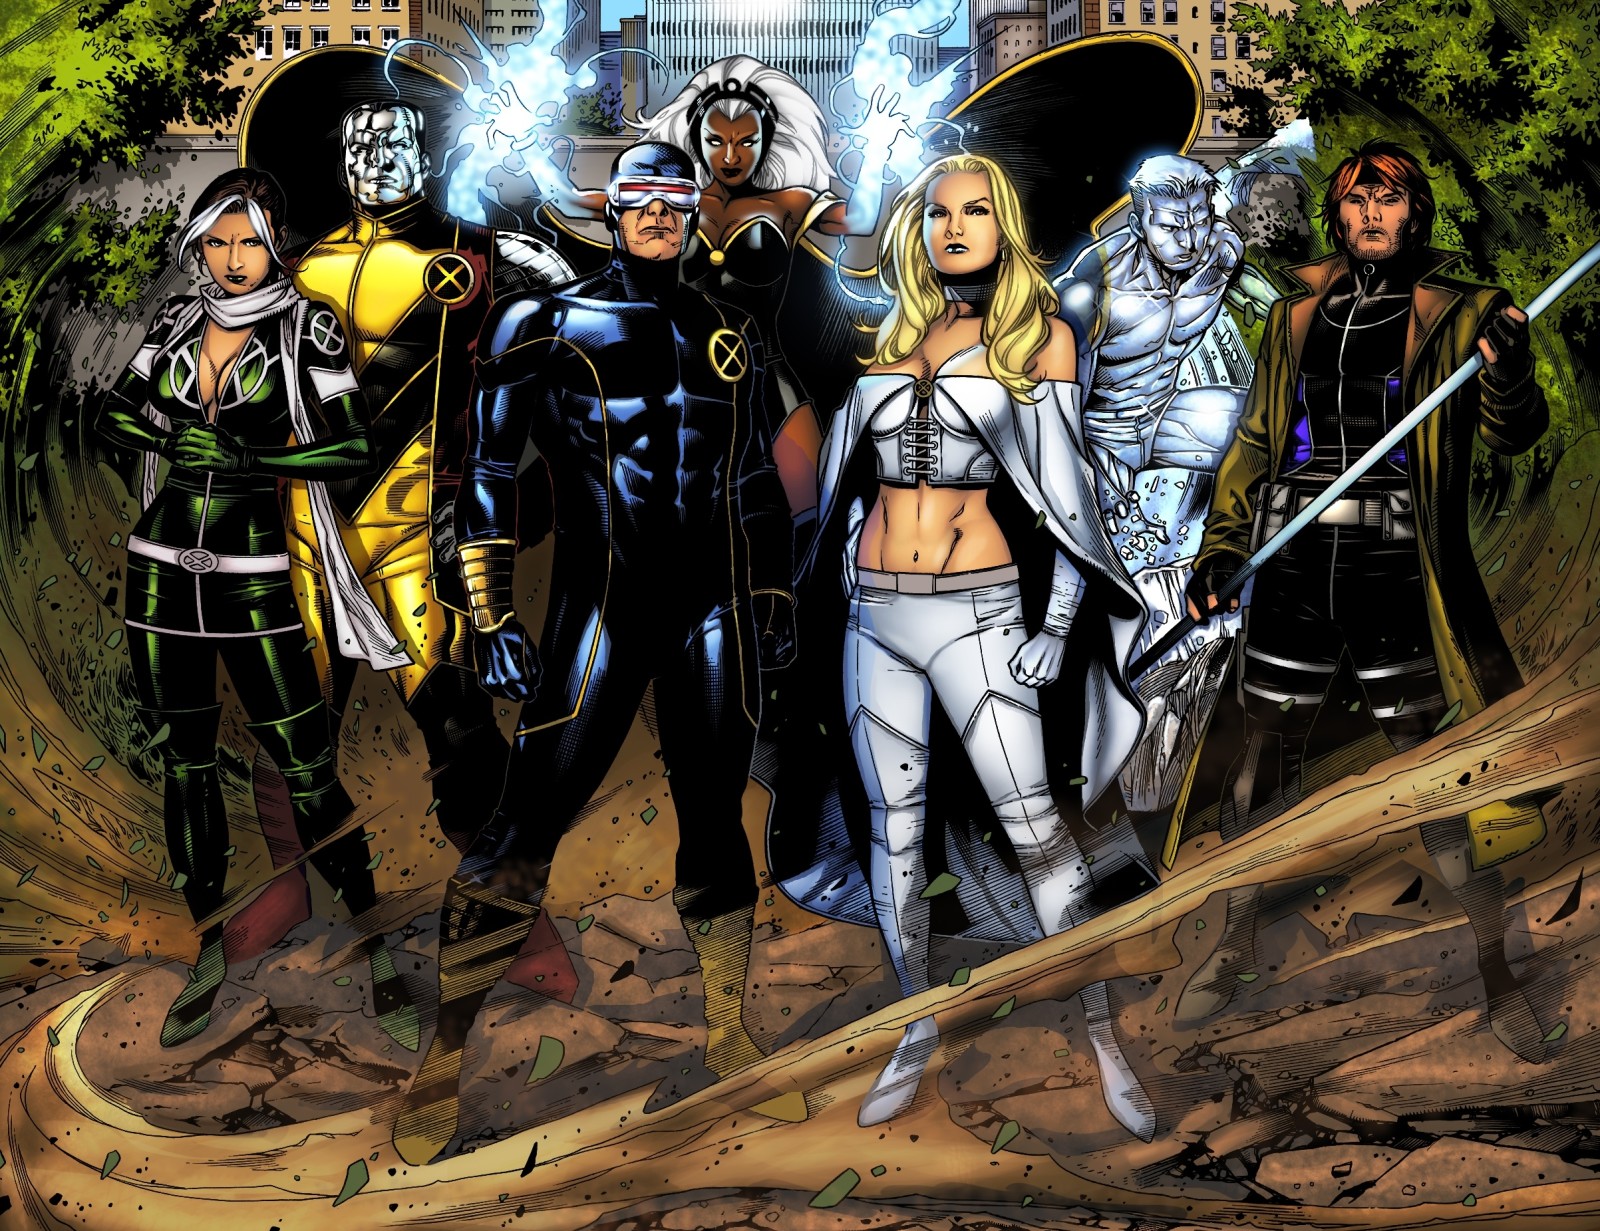 พายุ, โกง, ไซคลอปส์, X-Men, ยักษ์ใหญ่, กลเม็ด, Emma Frost, Iceman